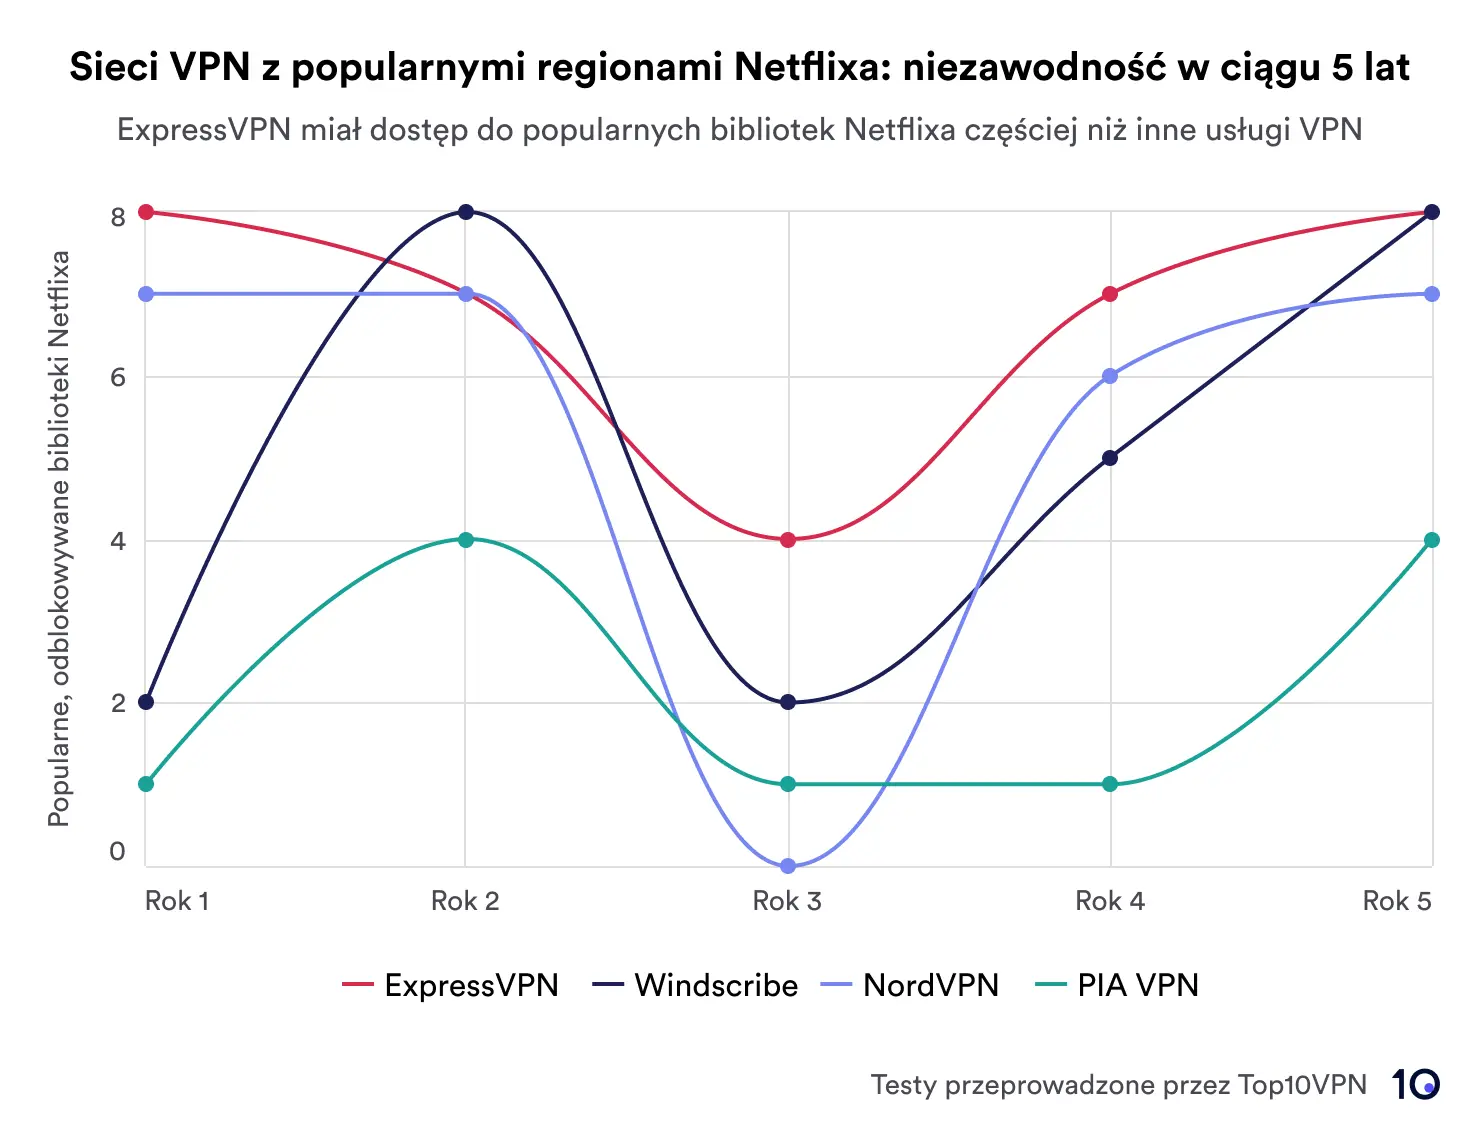 Wykres liniowy przedstawiający wydajność czterech sieci VPN — ExpressVPN, Windscribe, NordVPN i PIA VPN — w odblokowywaniu regionów Netflix na przestrzeni pięciu lat. ExpressVPN przoduje pod względem niezawodności.